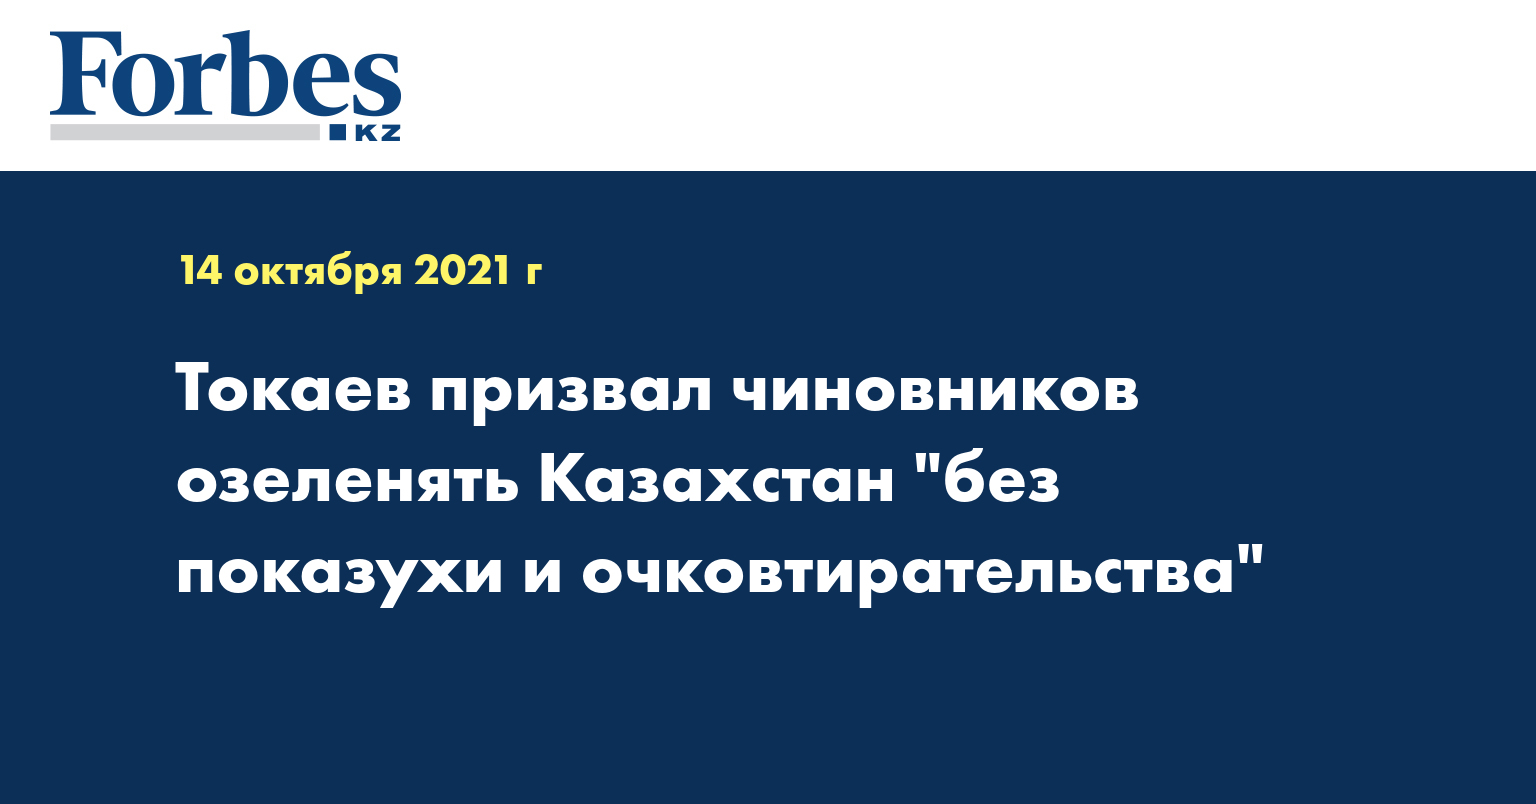 Токаев призвал чиновников озеленять Казахстан без «показухи и очковтирательства»